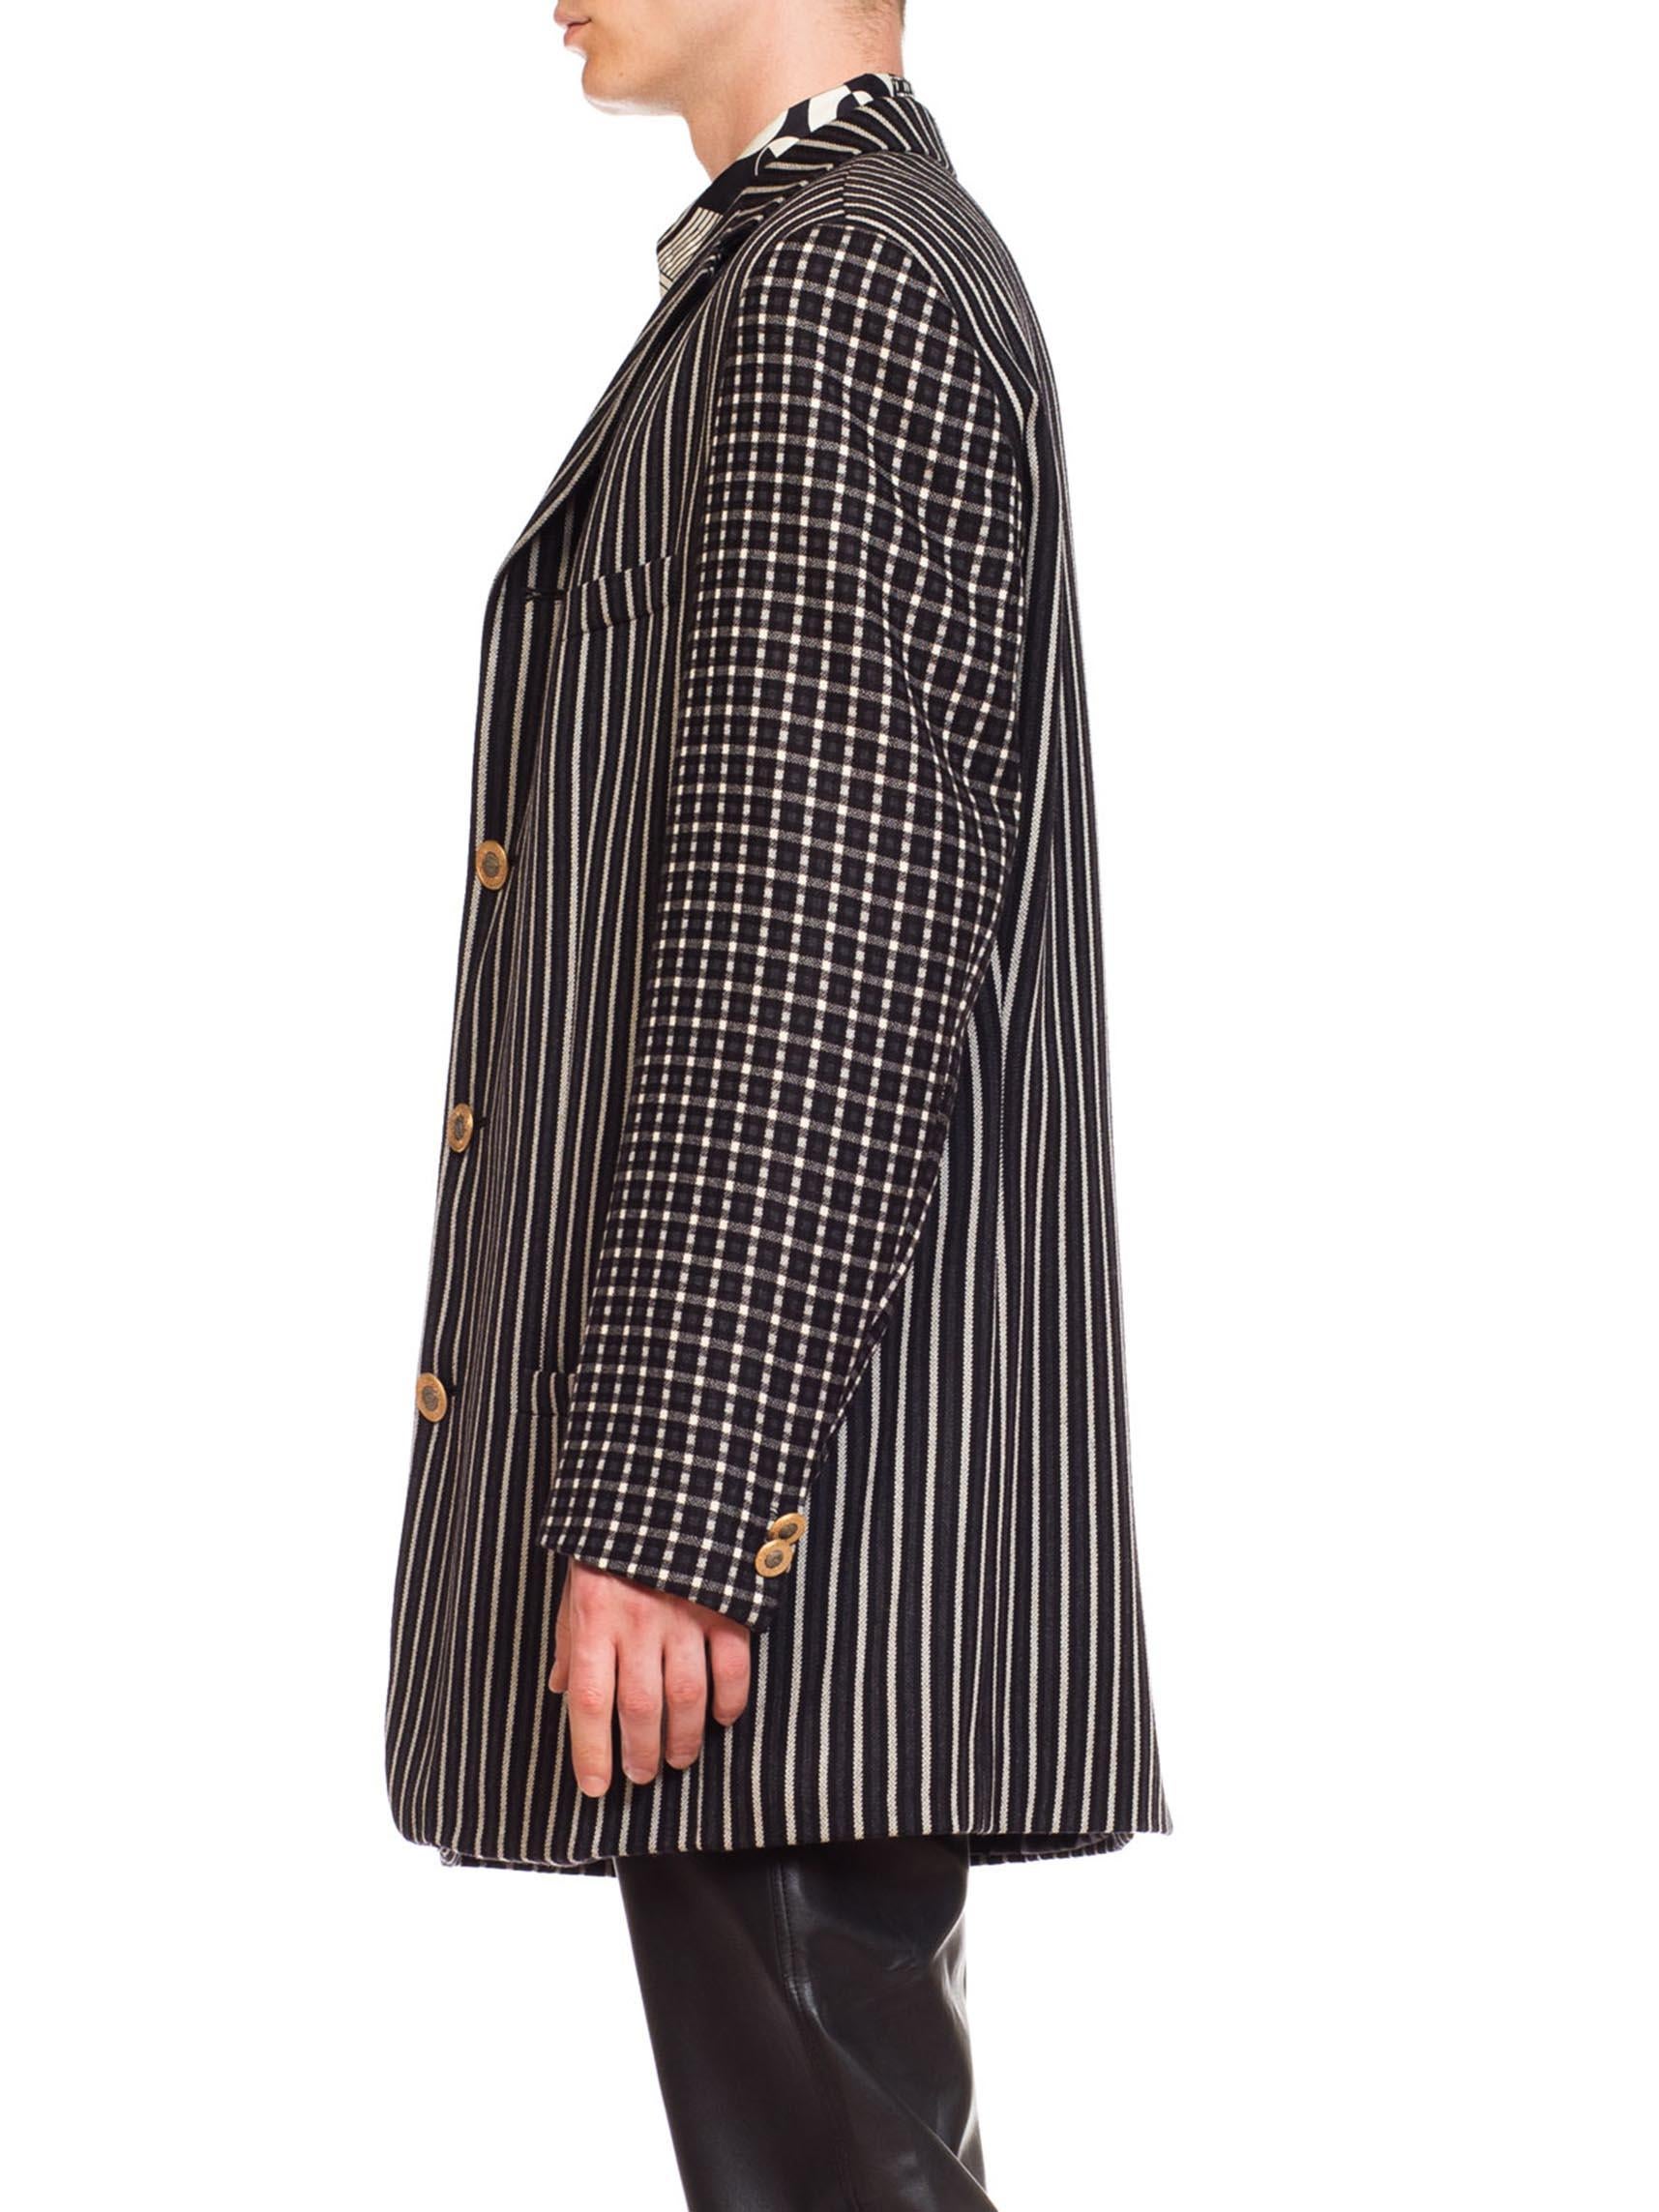 1990S GIANNI VERSACE Black, White & Grey Wool Check Plaid Striped Weiner Werkstatte Inspired Men's Blazer